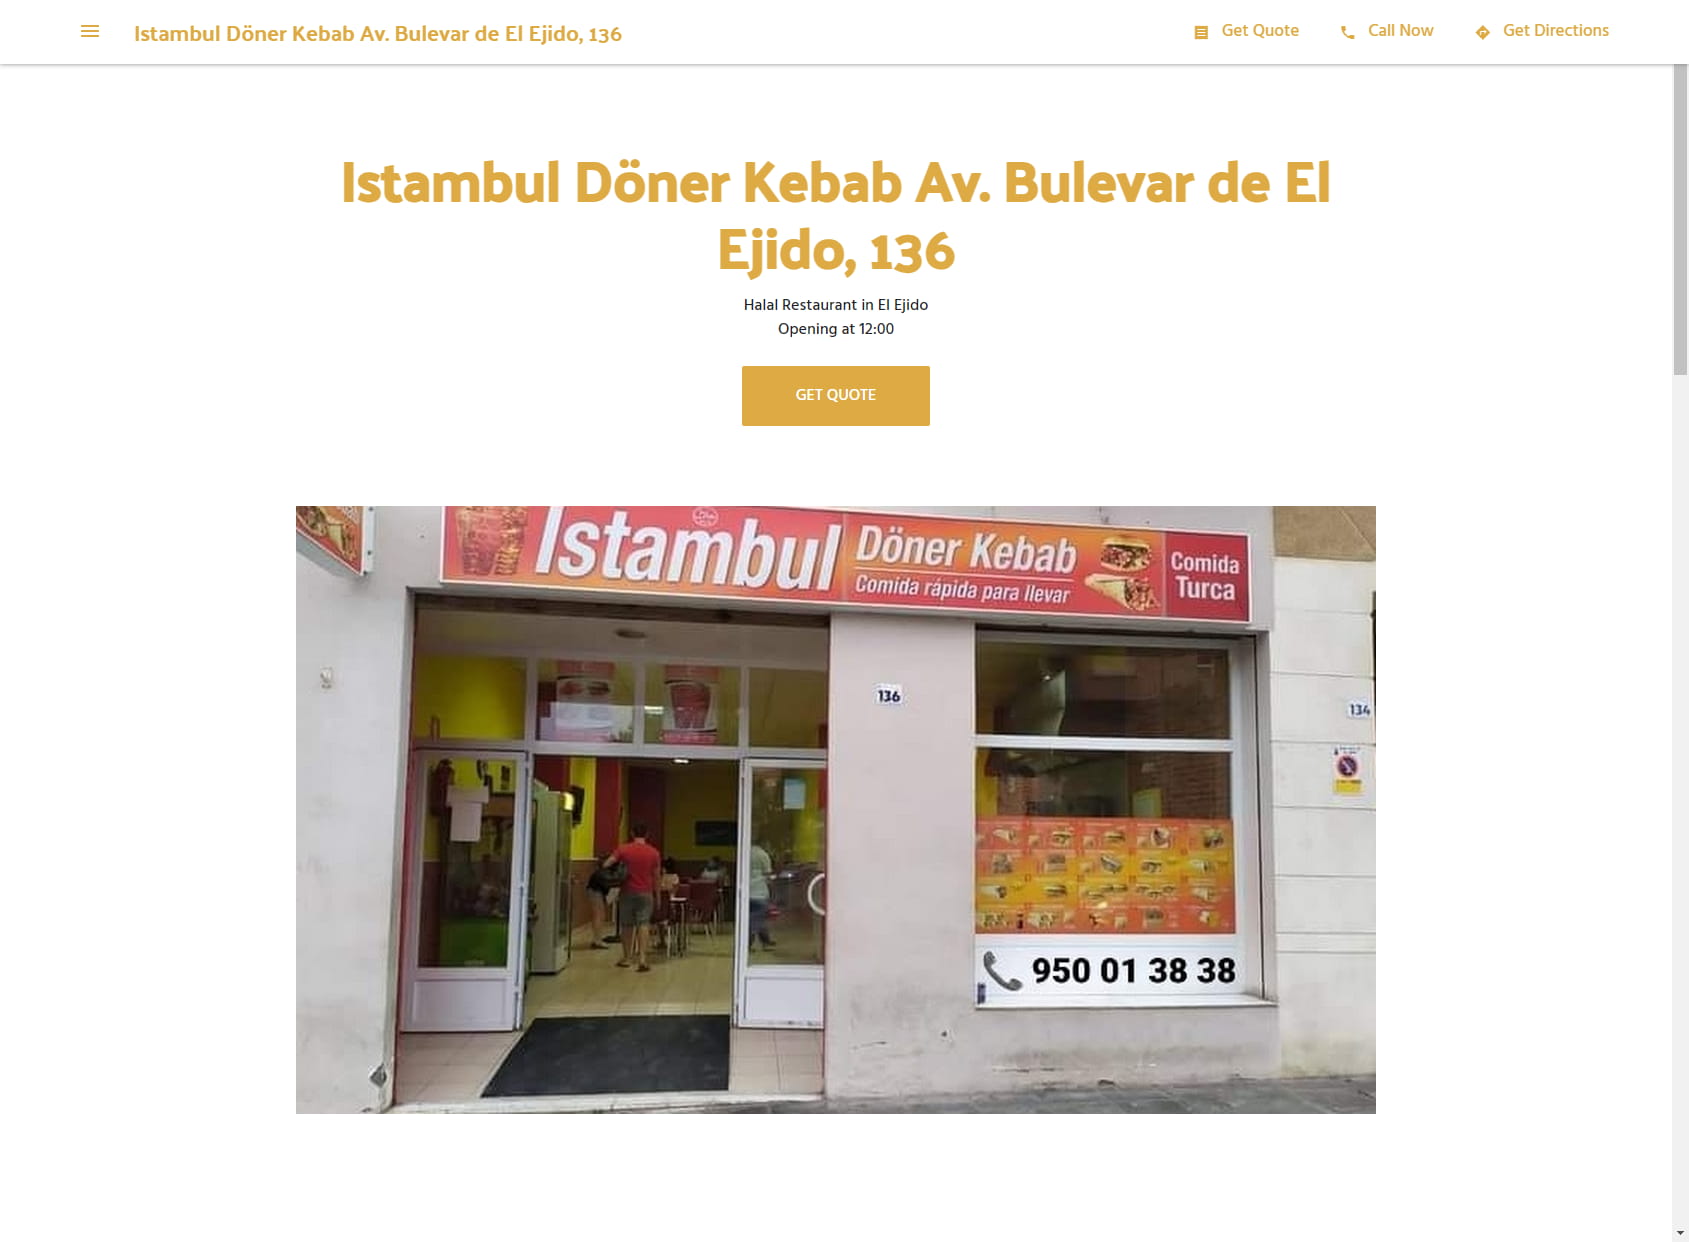 Istambul Döner Kebab Av. Bulevar de El Ejido, 136